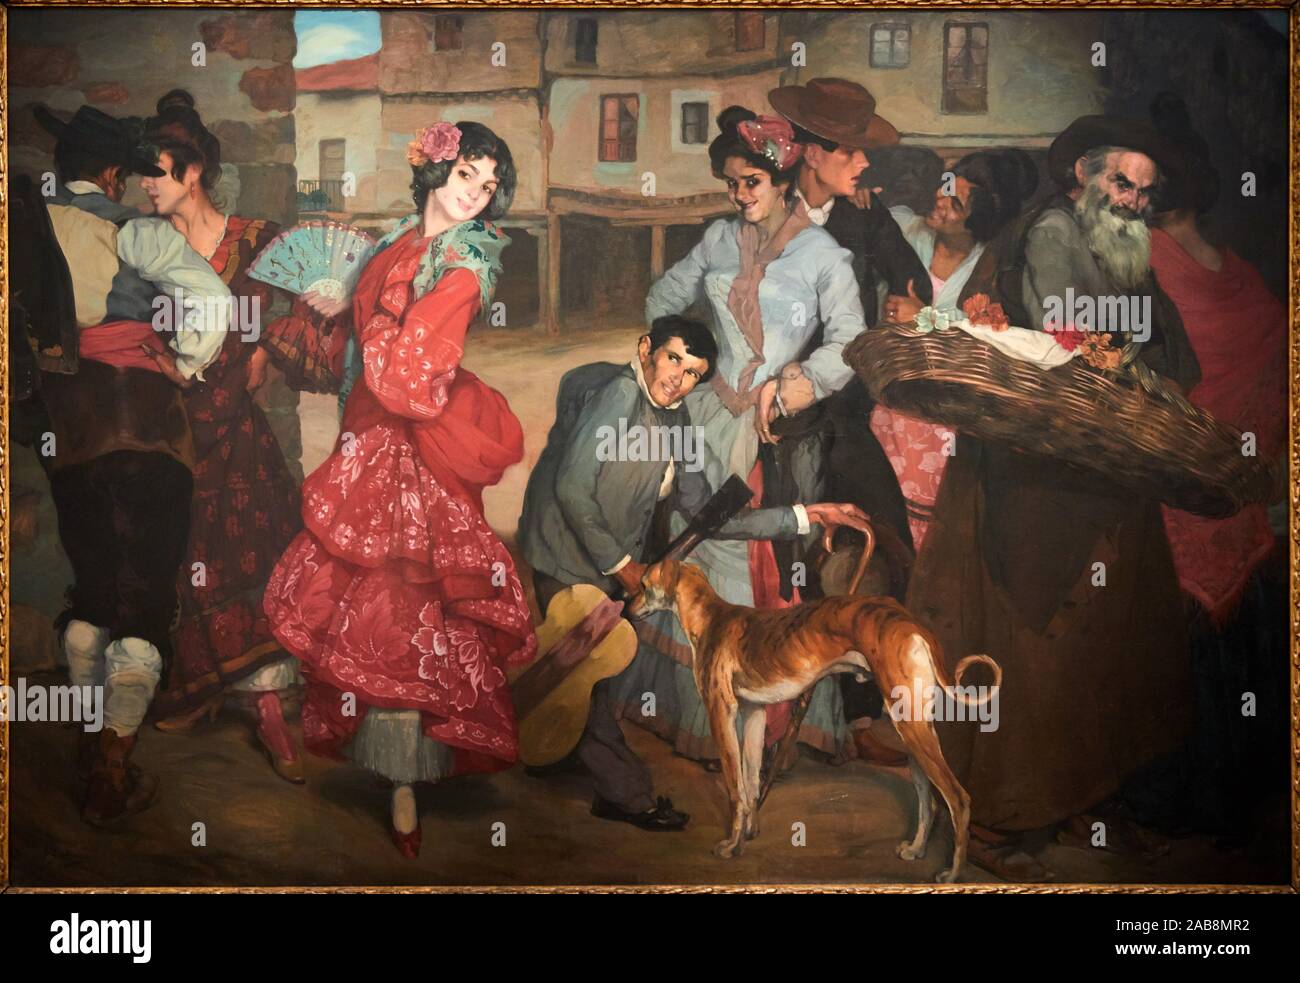 '''The Street of Vice'', La calle de las pasiones'', 1904, Ignacio Zuloaga (1870-1945), Museo de Bellas Artes, Bilbao, Bizkaia, Basque Country, Spain Stock Photo